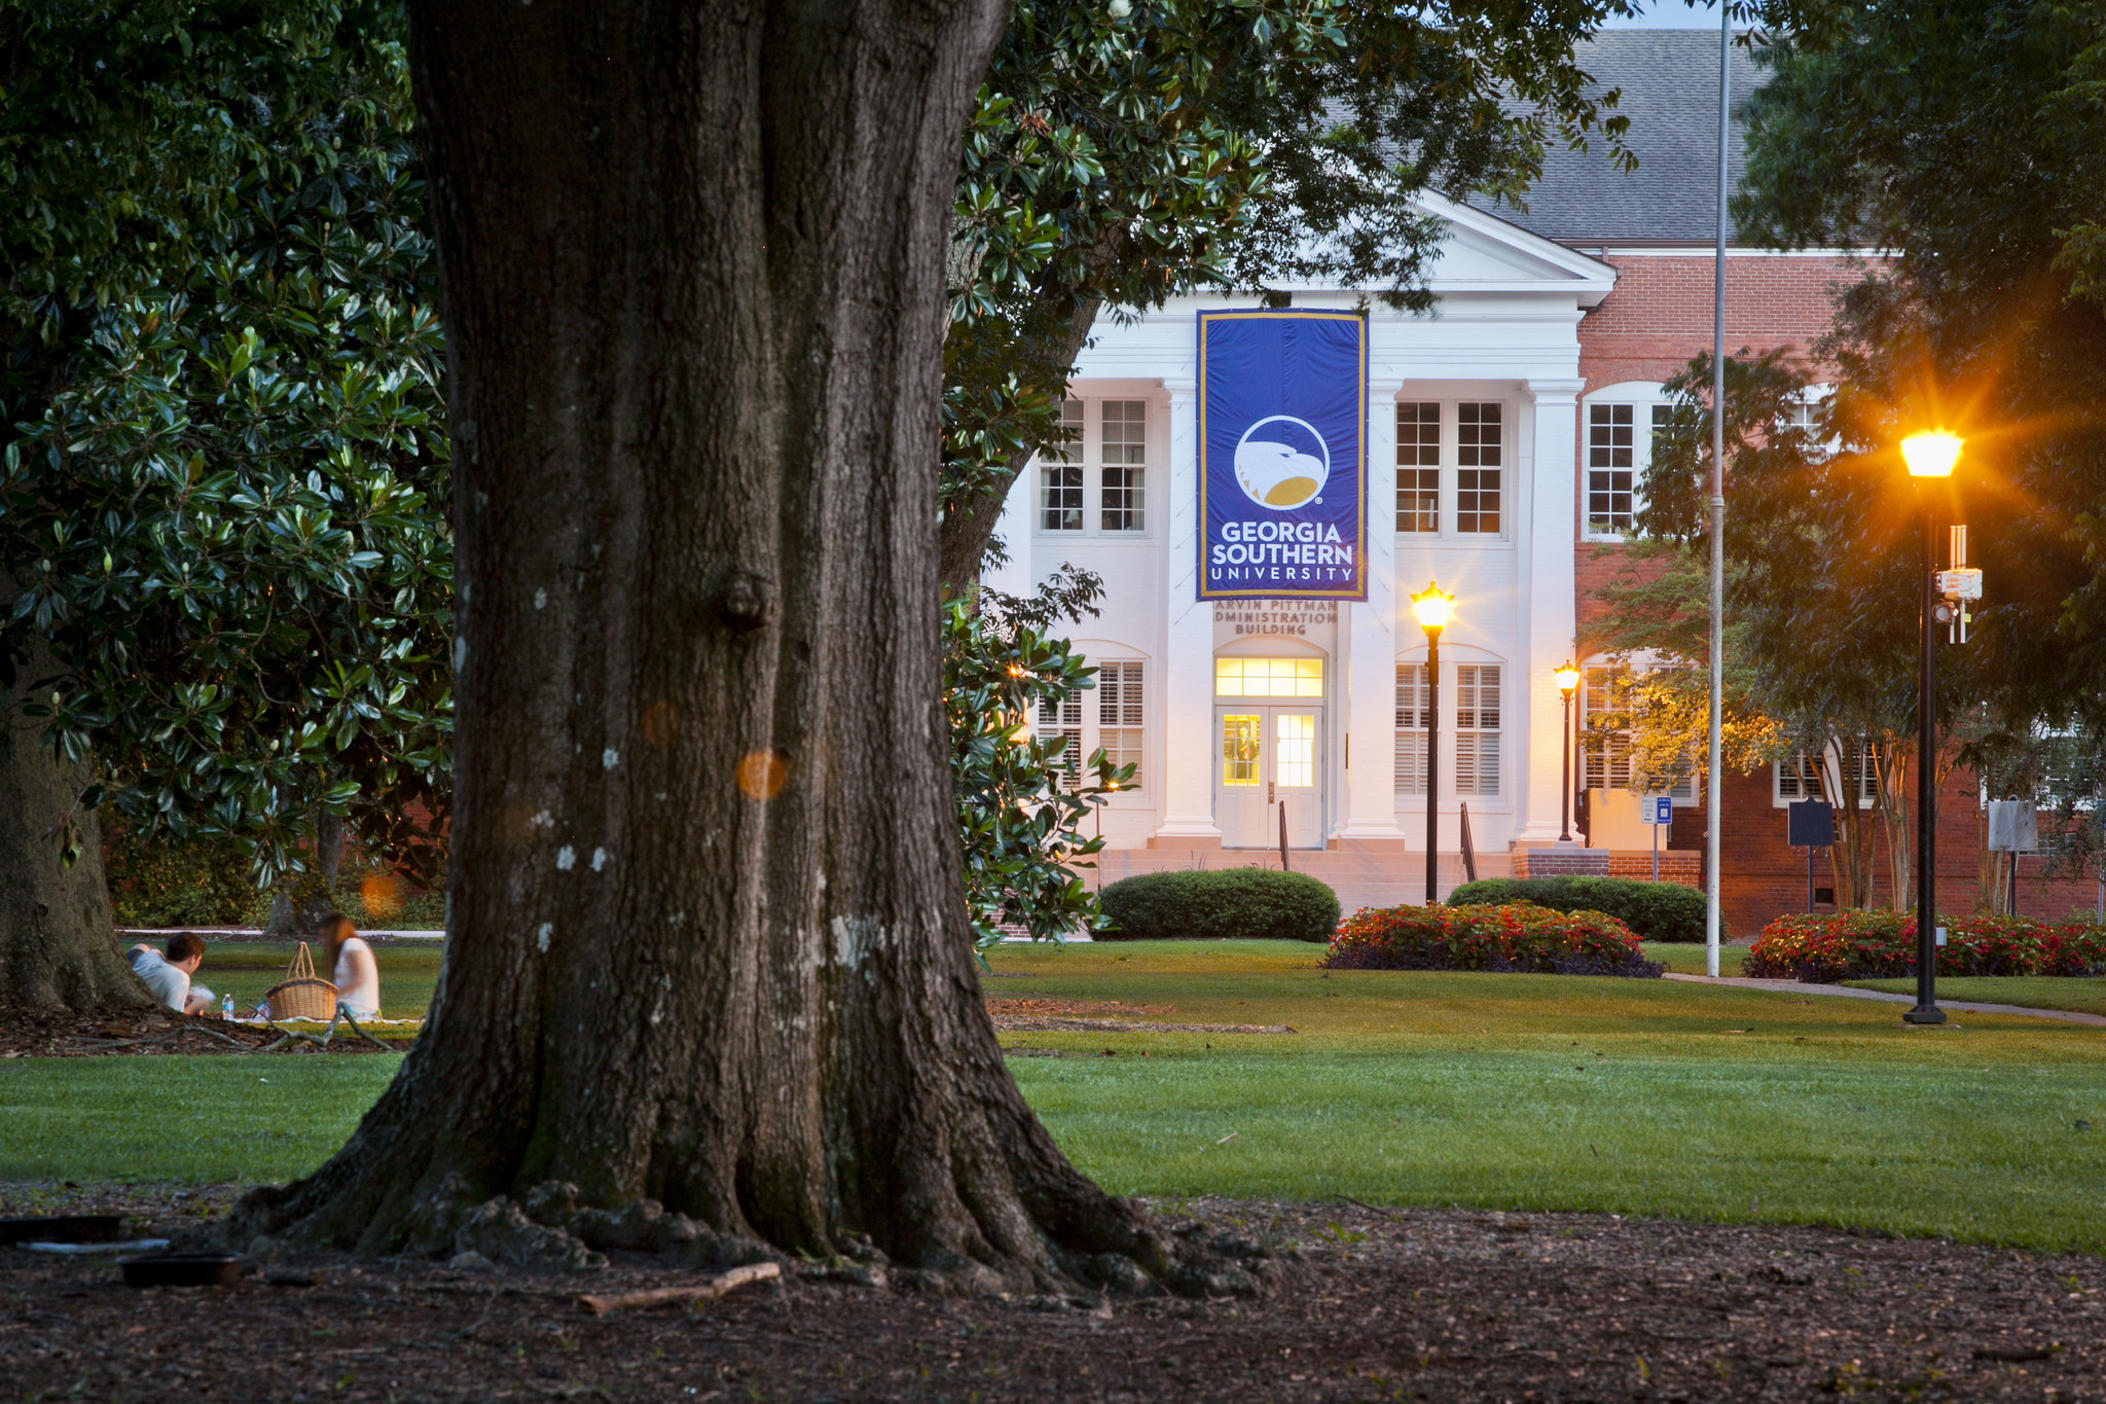 Georgia Southern University's Statesboro campus